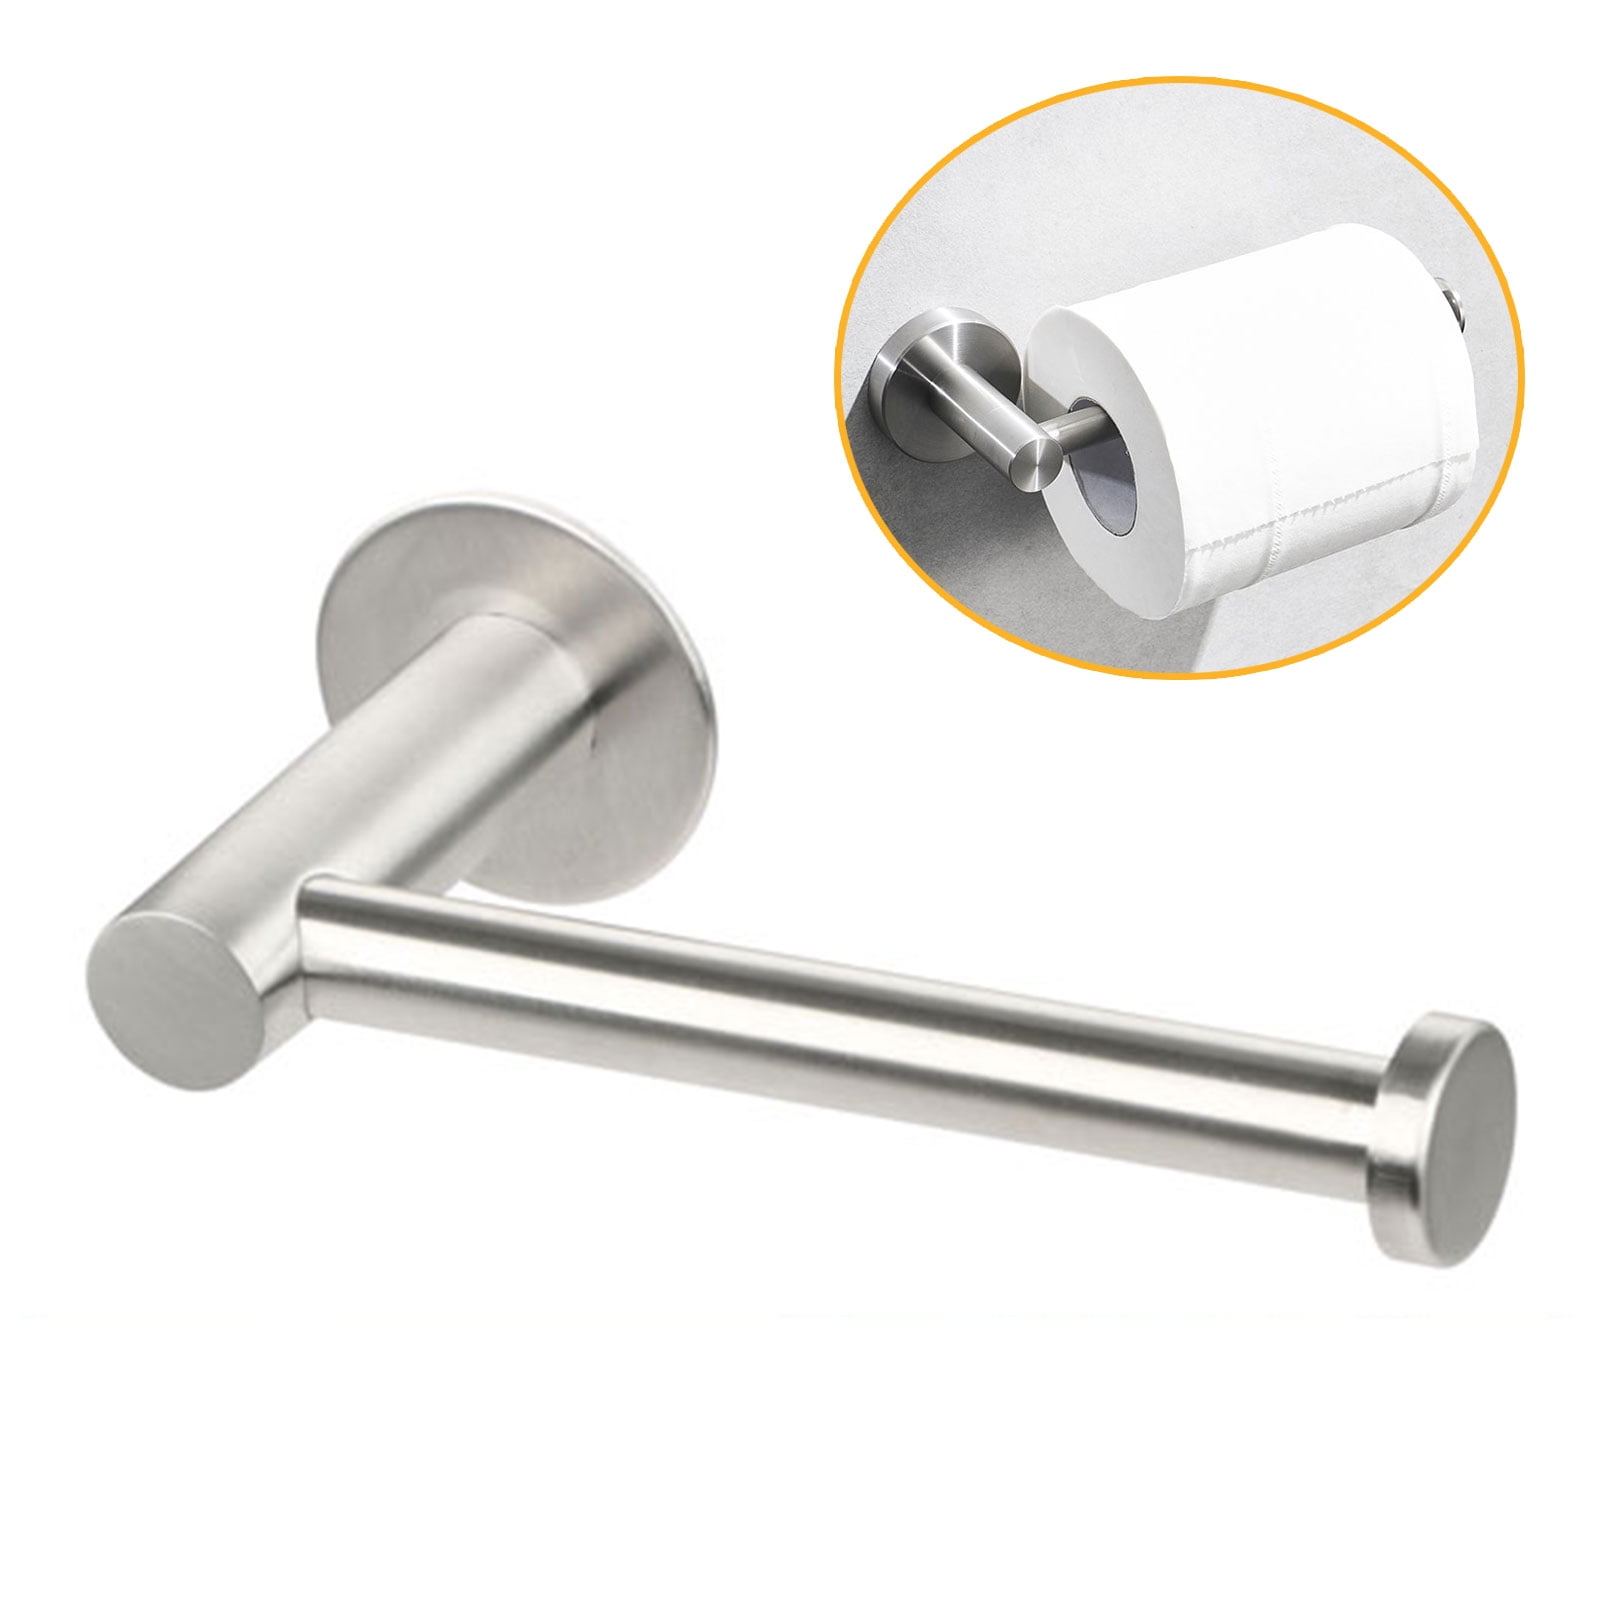 Mini Jumbo Toilet Roll Holder Dispenser Wall Mounted Brushed Stainless Steel